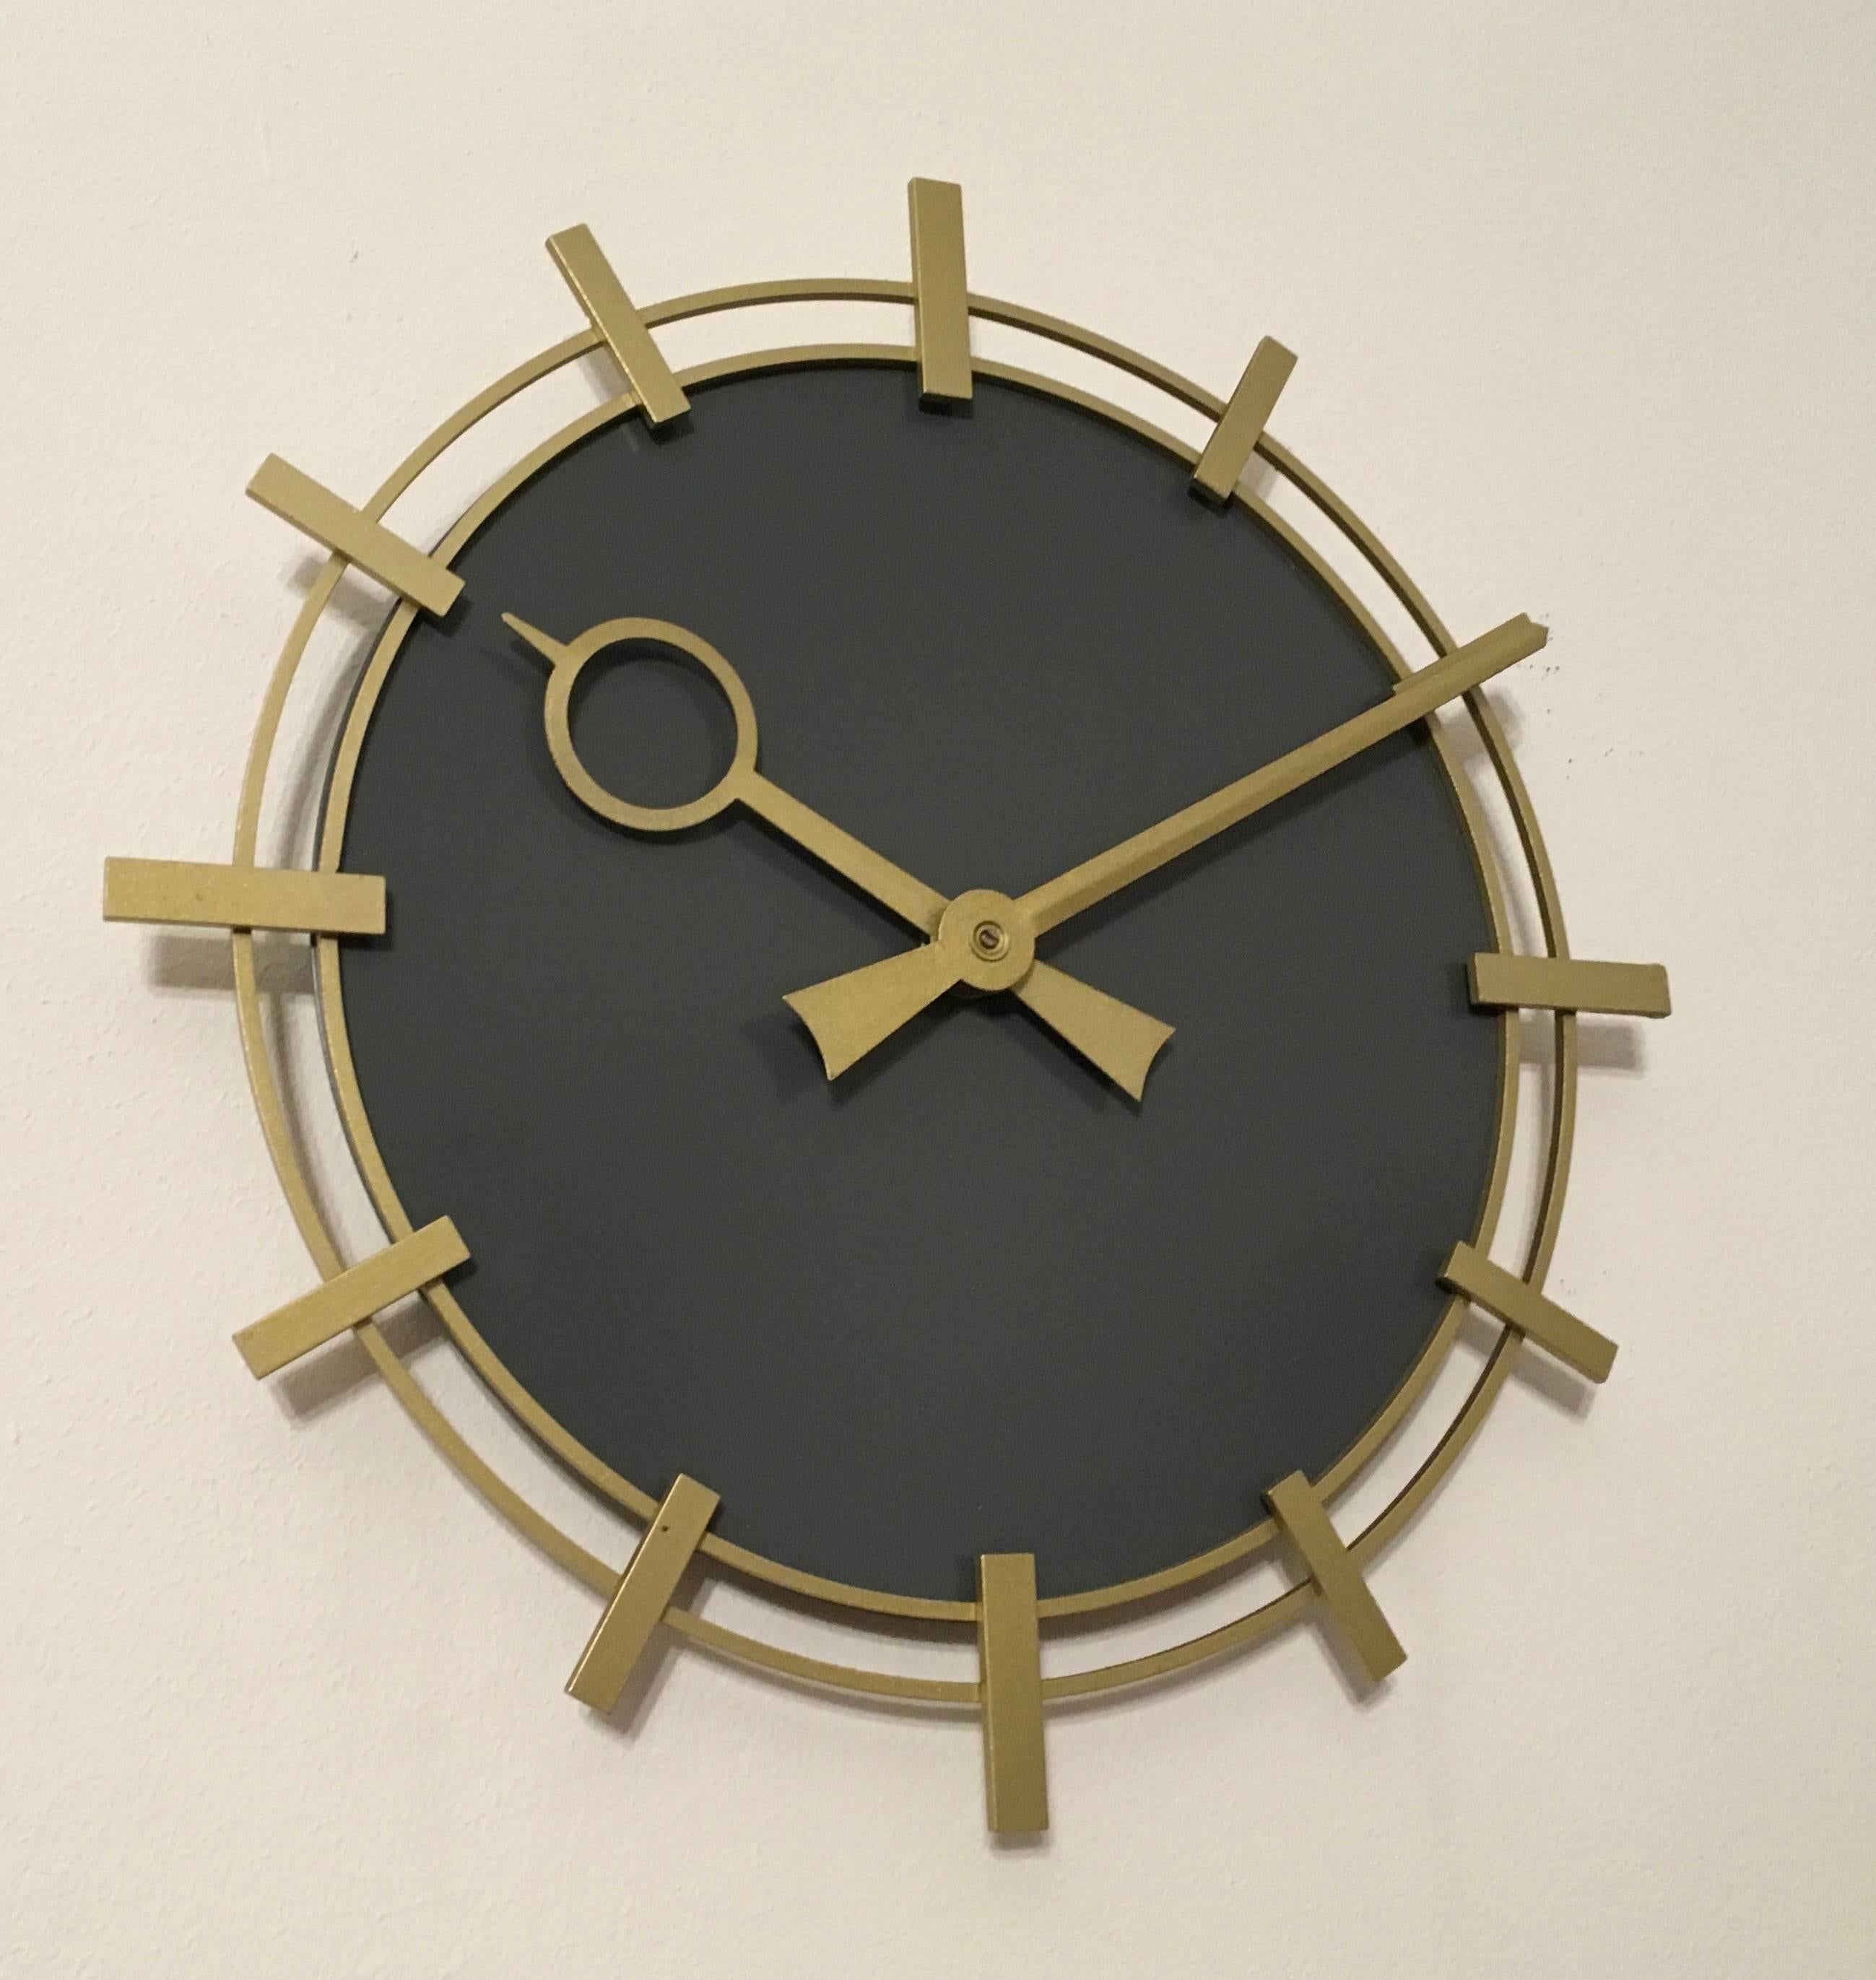 German Siemens Industrial Factory or Workshop Wall Clock